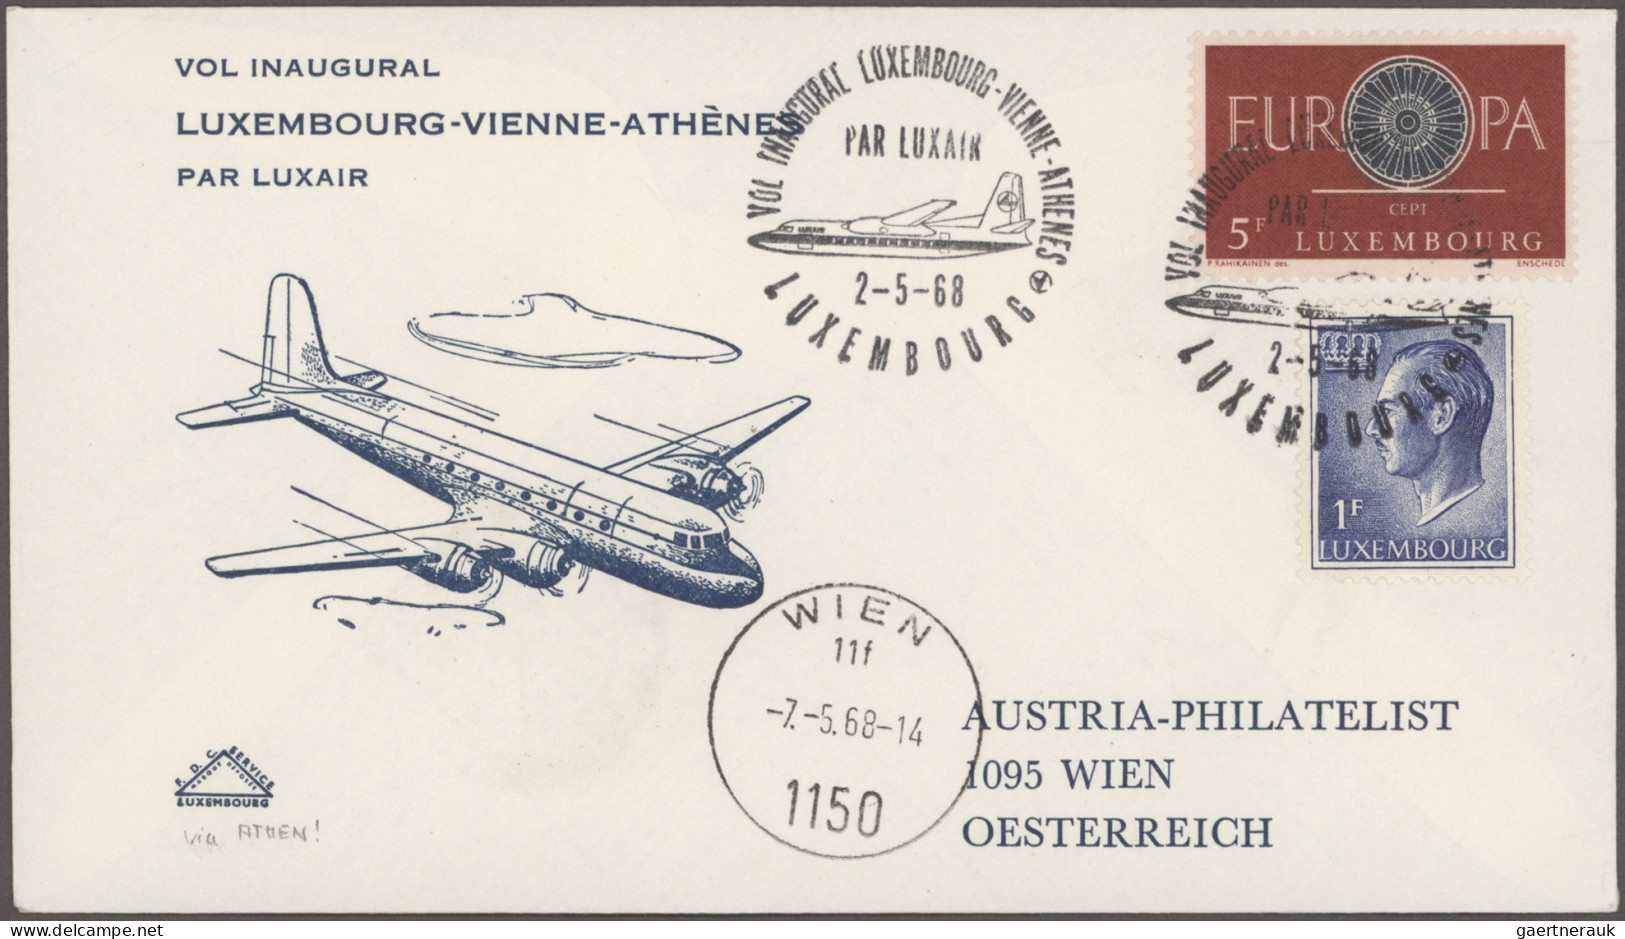 Airmail - Europe: 1946/1968, Sammlung von 156 Briefen und Karten von Eröffnungs-